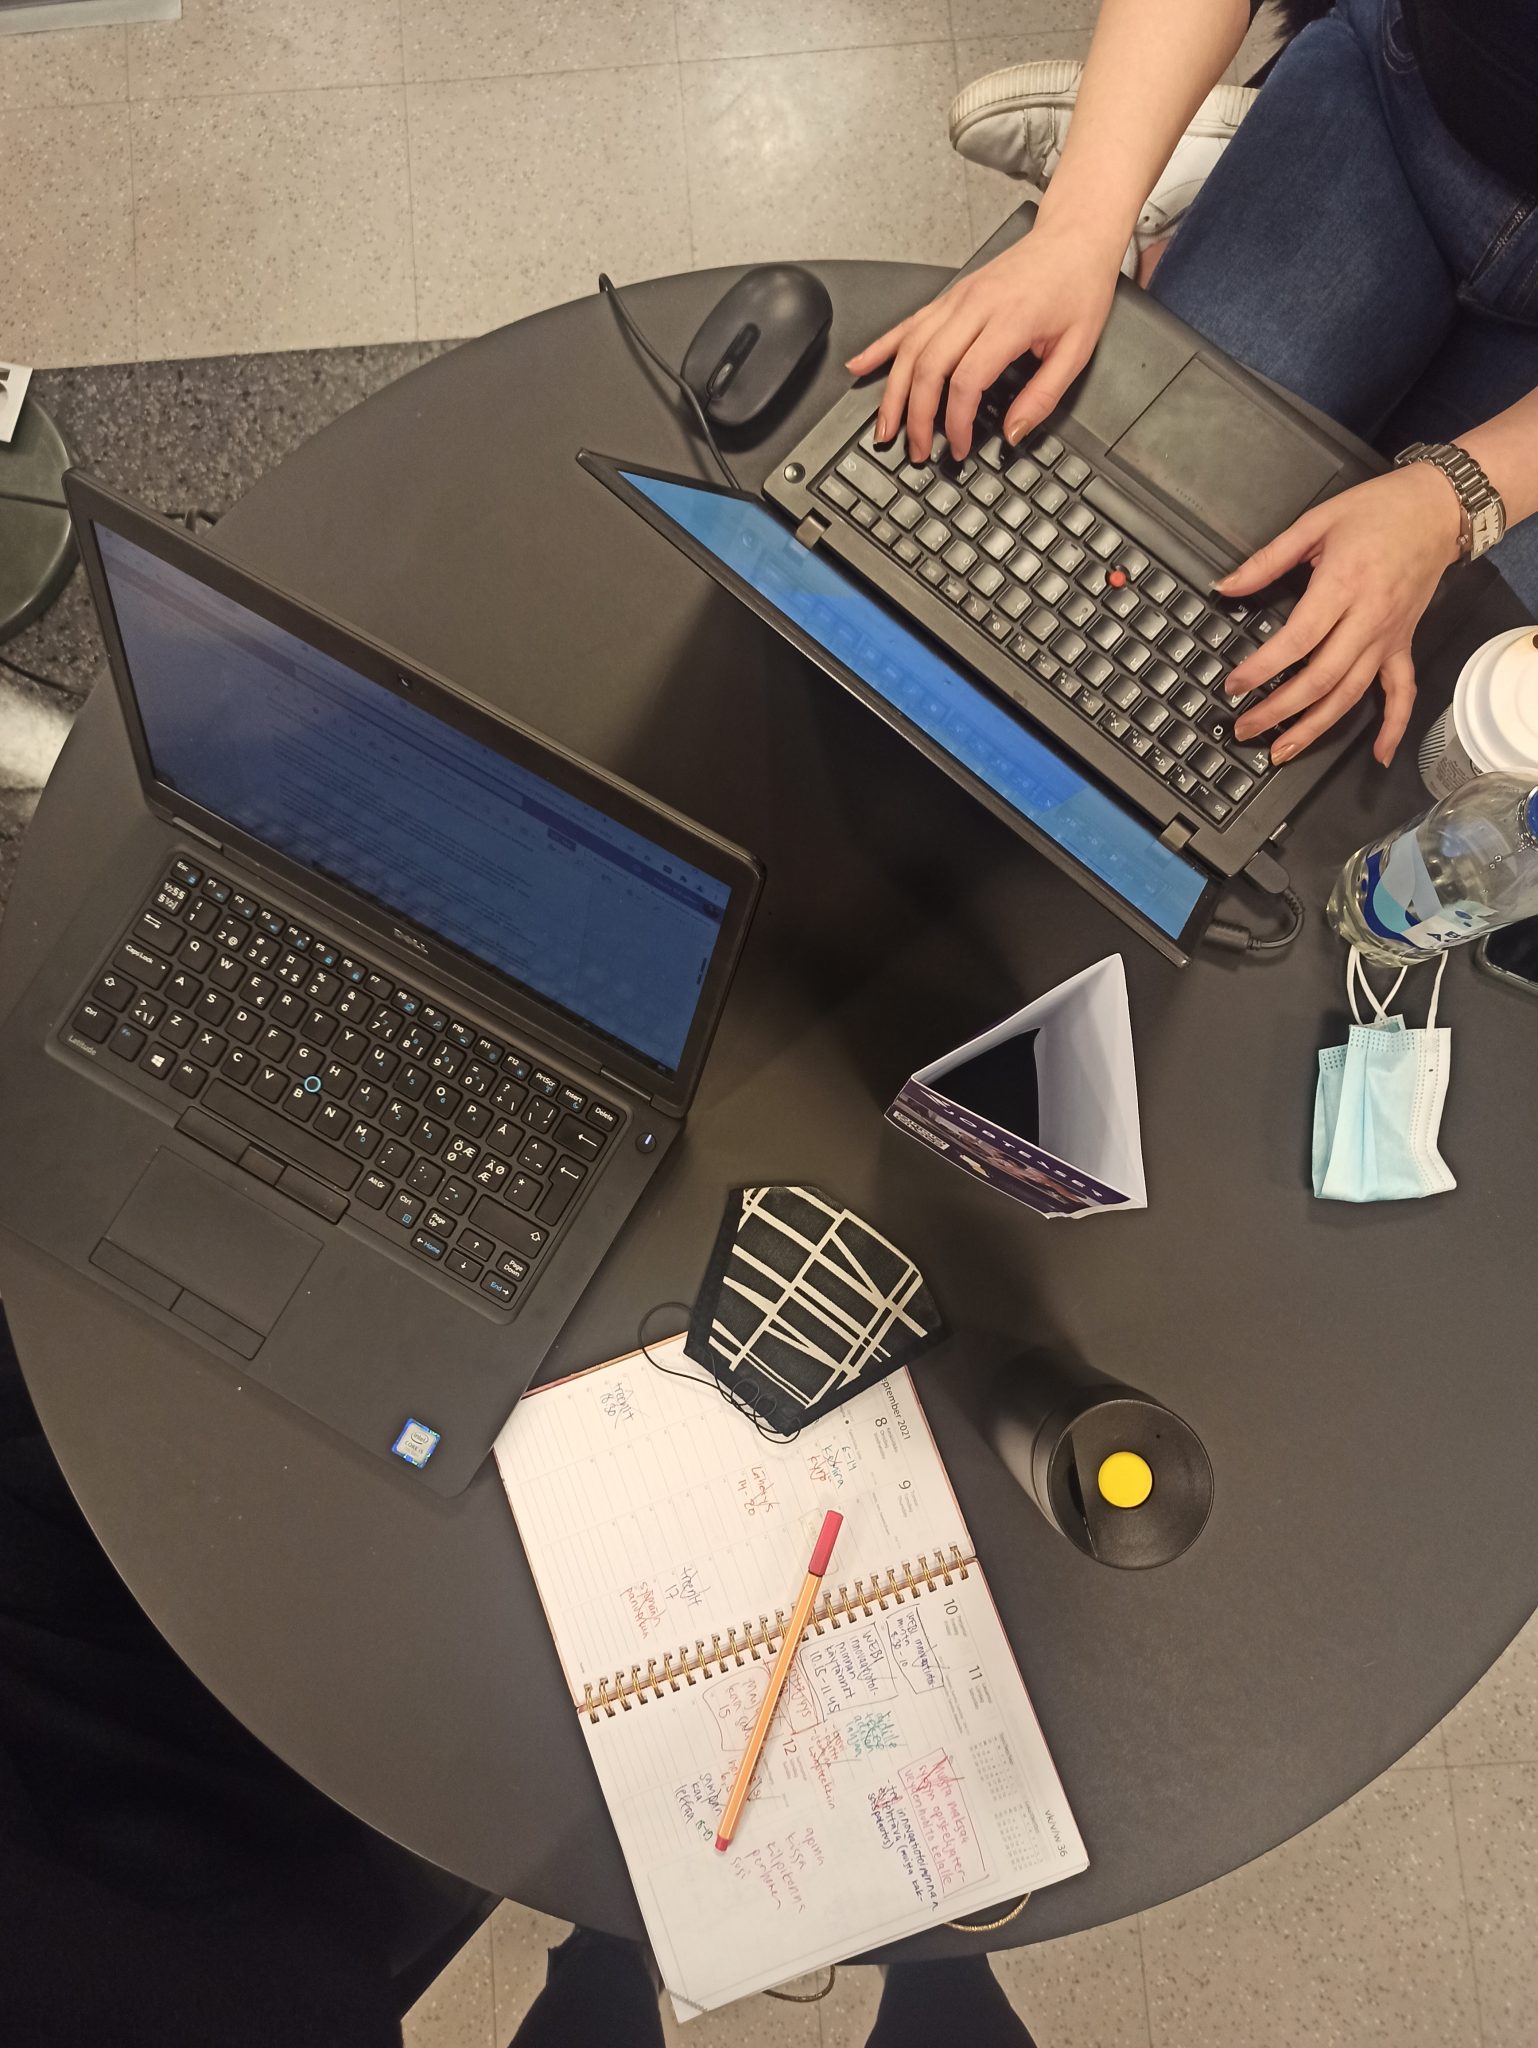 Yläperspektiivistä otettu kuva mustasta pyöreästä pöydästä, jonka päällä on kaksi tietokonetta ja opiskelutarvikkeita.